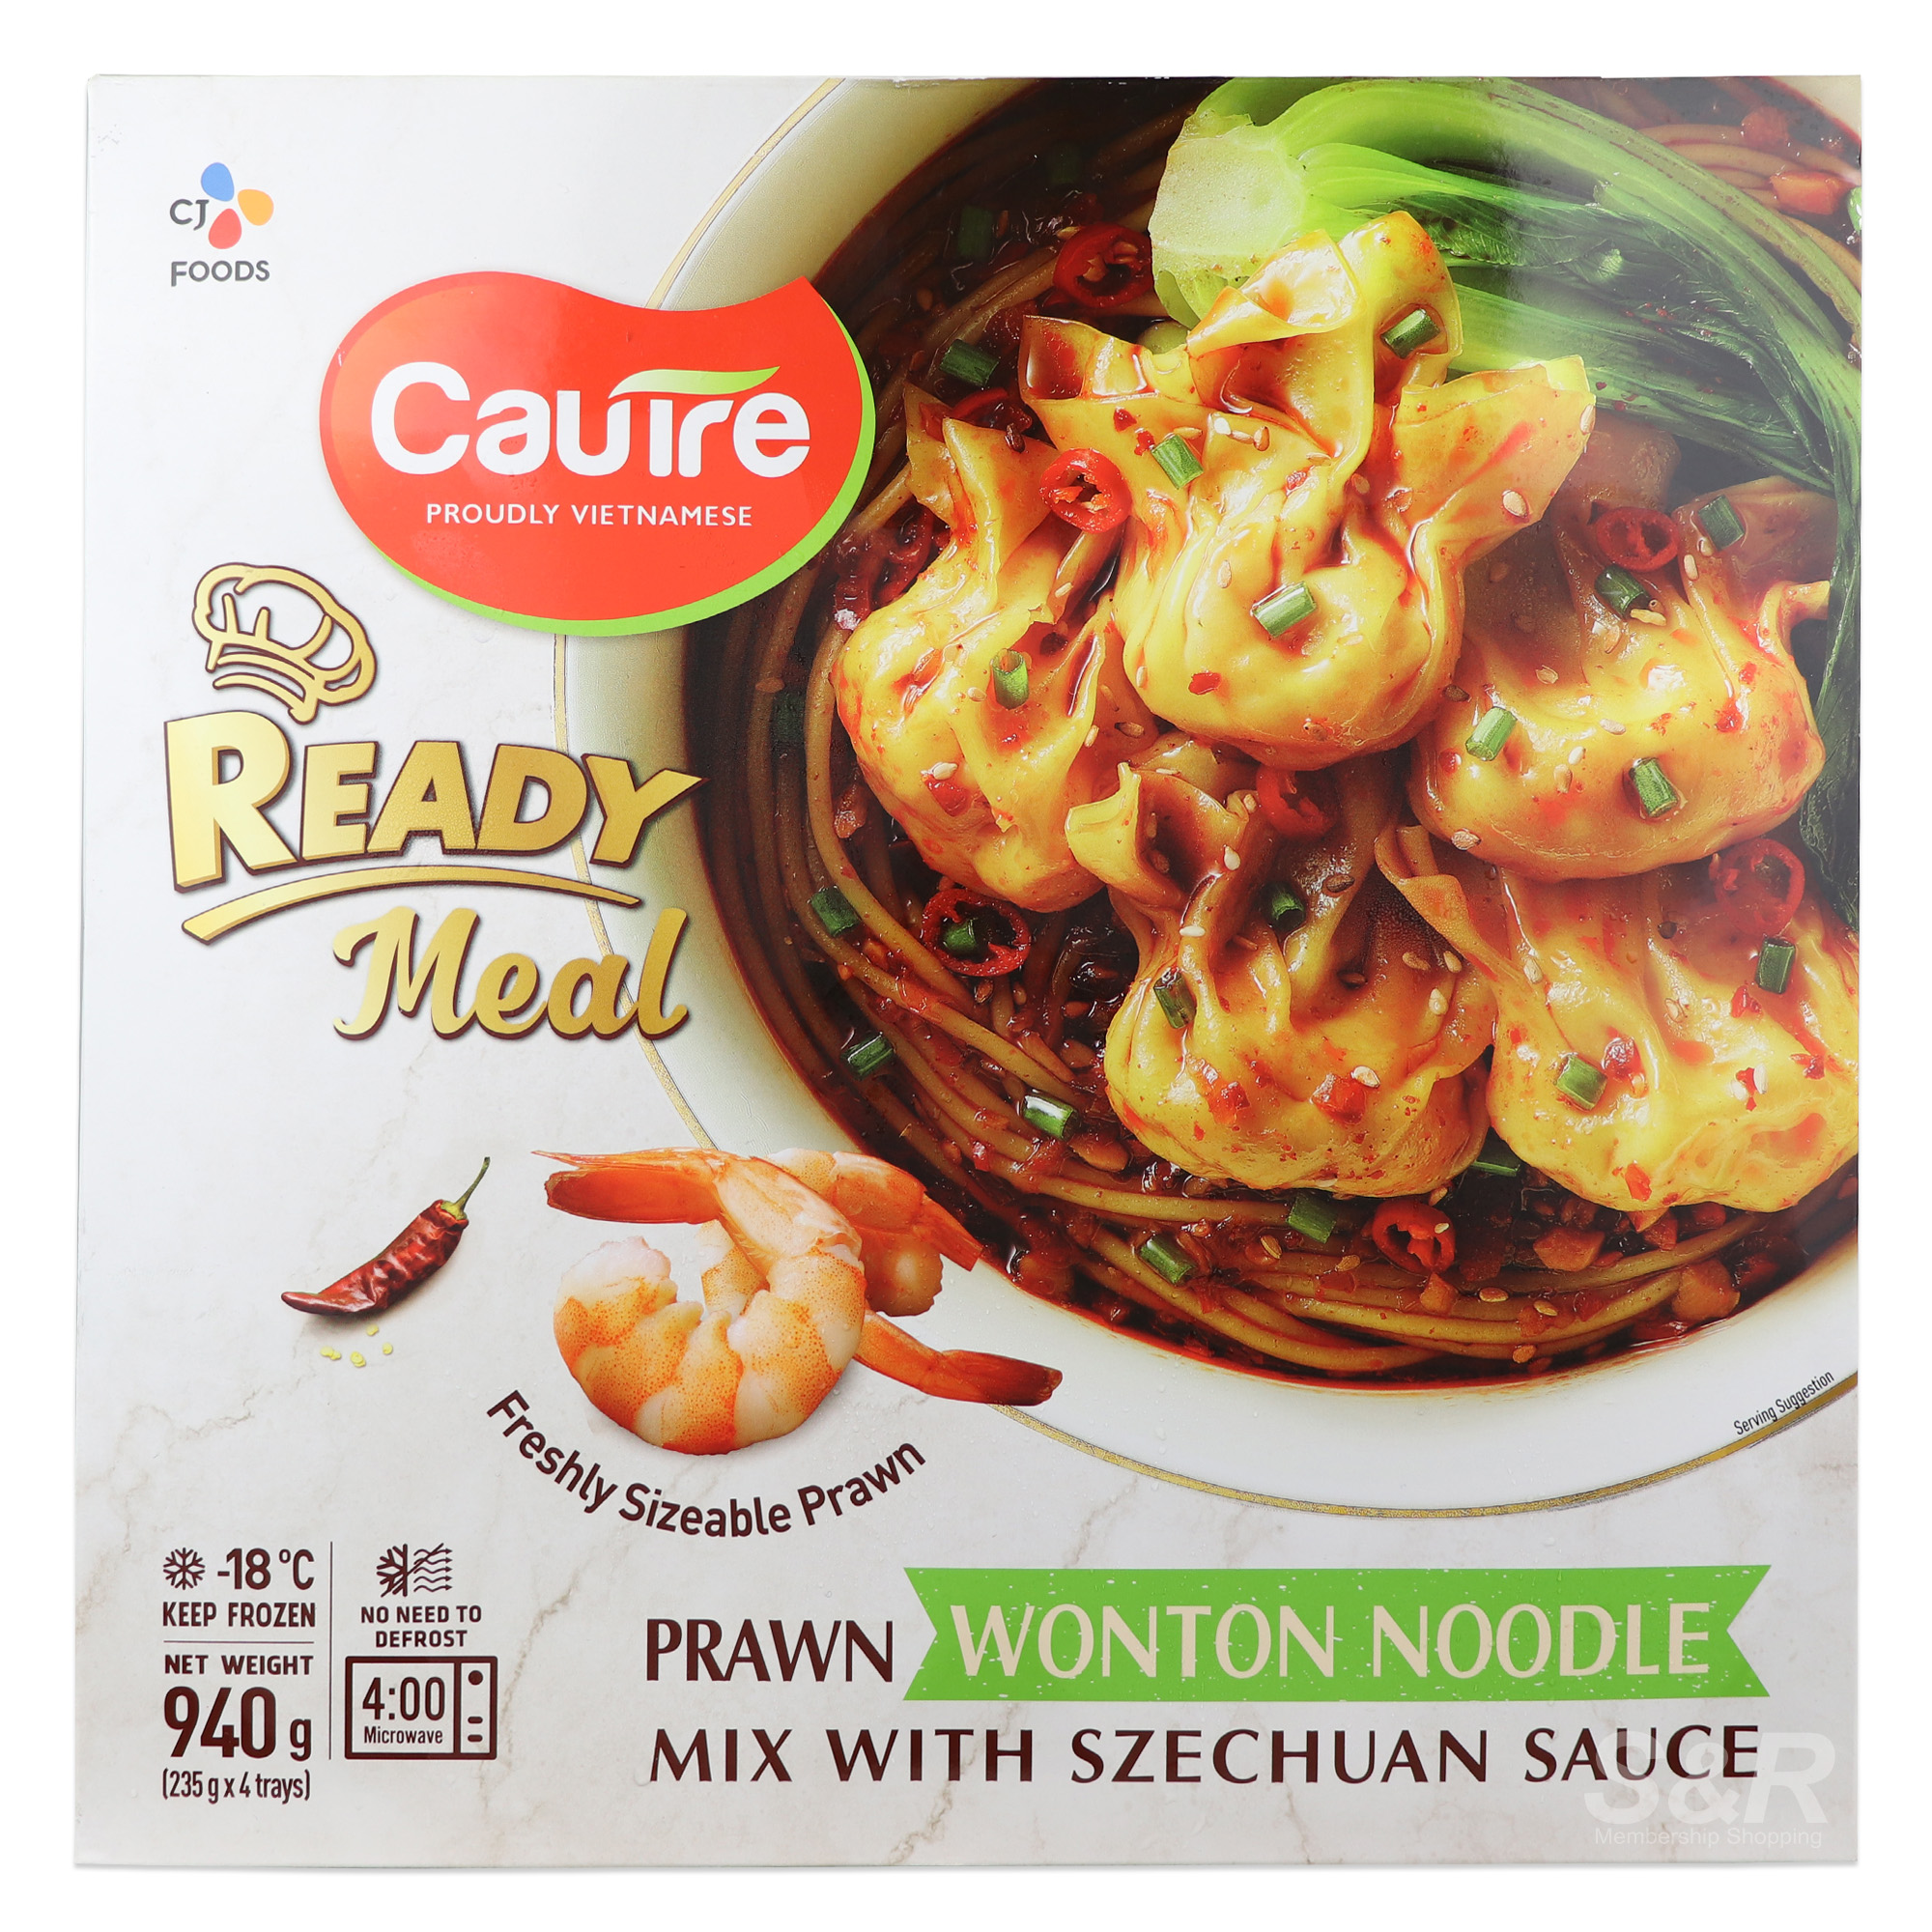 CJ Foods Cautre Prawn Wonton Noodle Mix with Szechuan Sauce 940g